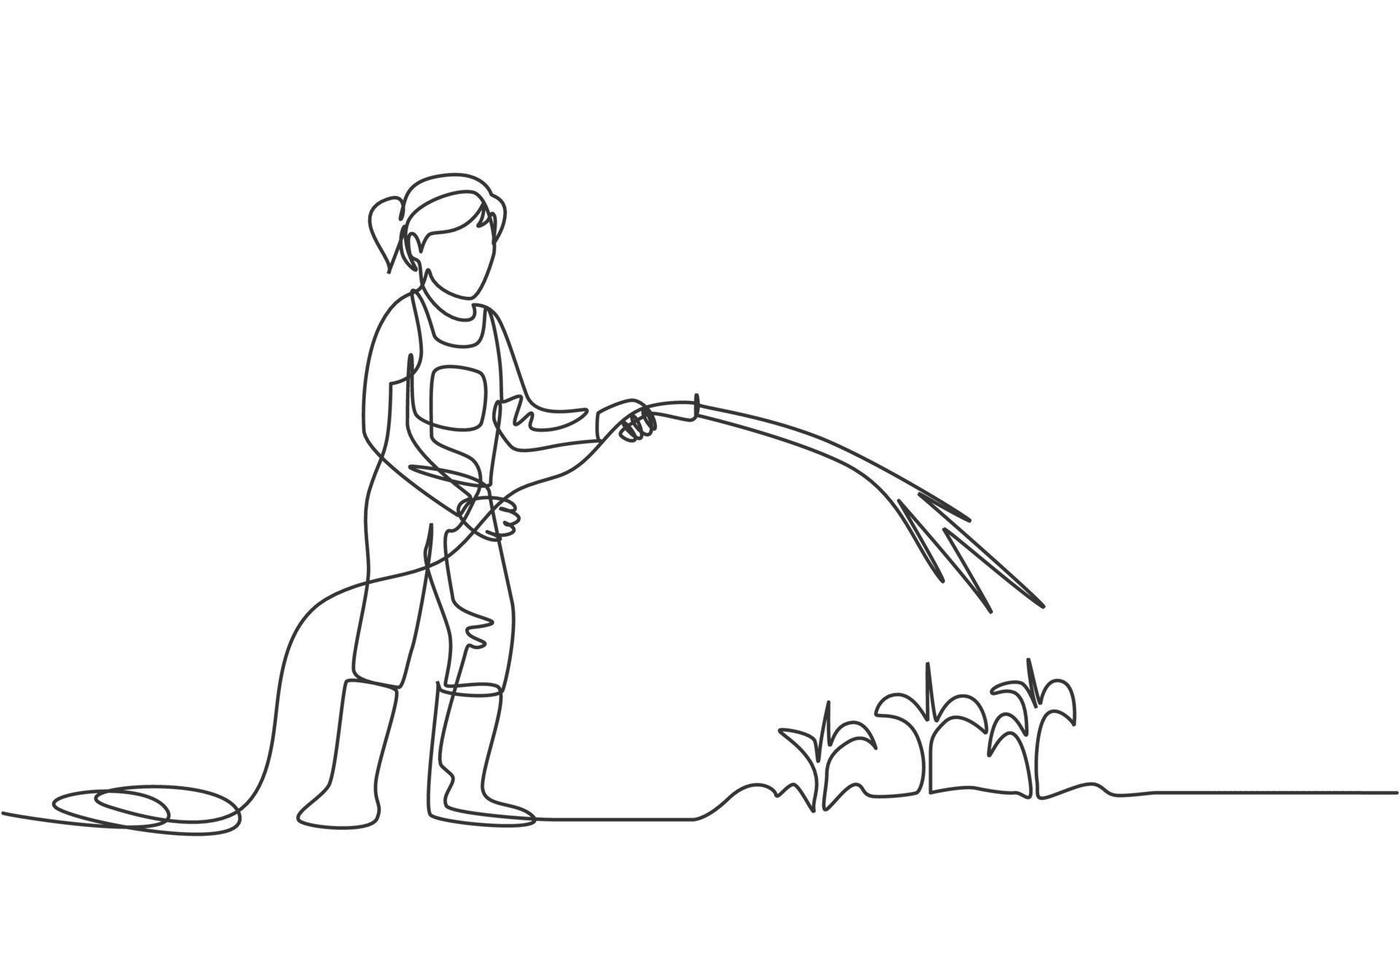 Kontinuierliche eine Linie, die junge Bäuerin zeichnet, die auf dem Feld steht, während sie die Pflanzen mit einem Schlauch gießt. Landwirt pflanzt Aktivitäten Konzept. einzelne Linie zeichnen Design-Vektor-Grafik-Darstellung. vektor